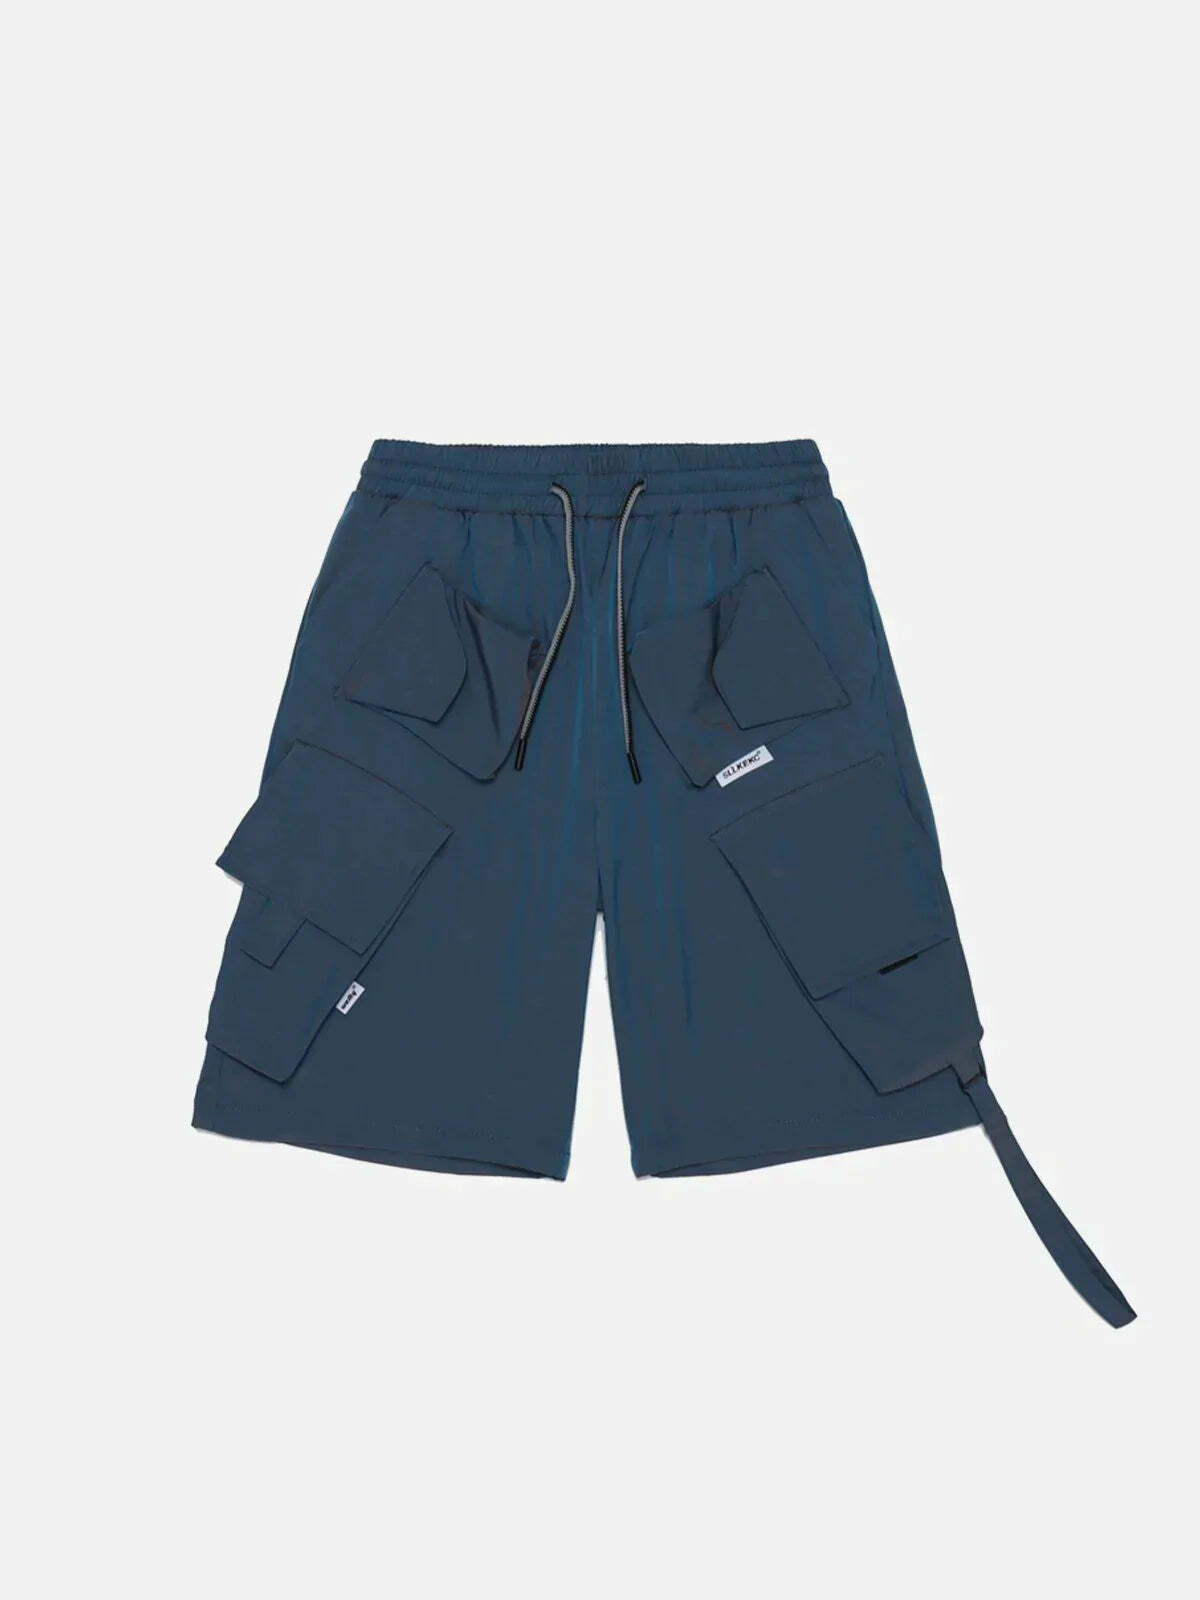 drawstring cargo shorts urban streetwear essential 8176